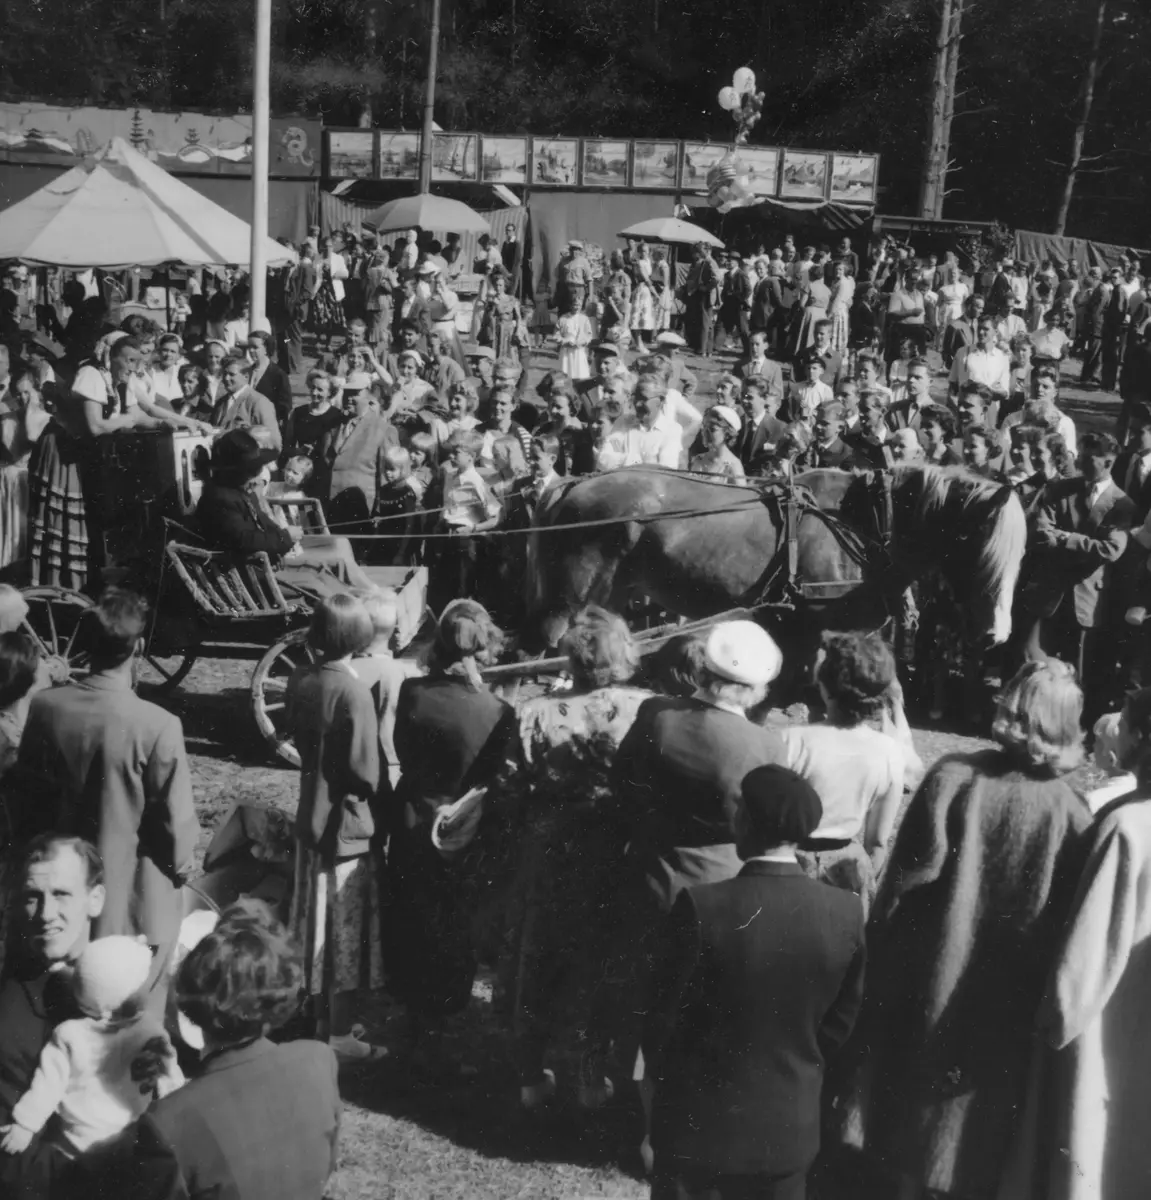 Turinge marknad 1956. Kortegen med vagnar och personer som var uppklädda i genuina kläder från 1890 talet har nått marknadsplatsen och kör ett uppvisningsvarv bland marknadsbesökarna. Marknaden var ett mycket uppskattat evenemang och hade 5000 besökare under de tre dagarna